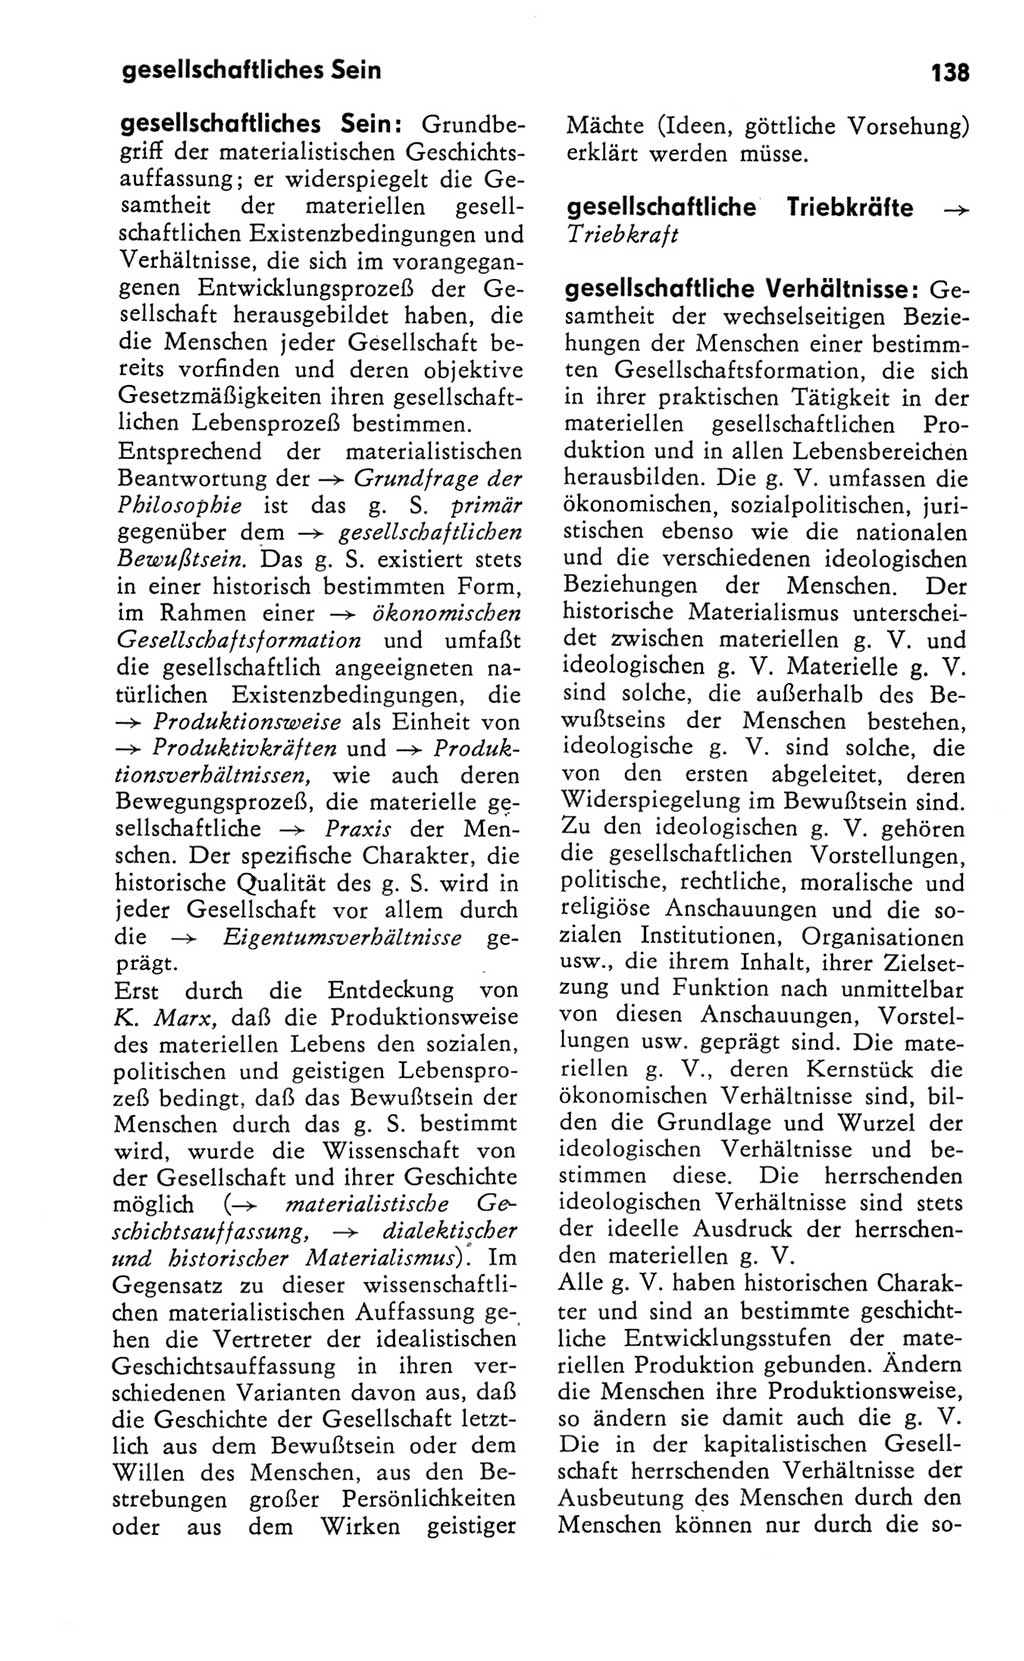 Kleines Wörterbuch der marxistisch-leninistischen Philosophie [Deutsche Demokratische Republik (DDR)] 1981, Seite 138 (Kl. Wb. ML Phil. DDR 1981, S. 138)